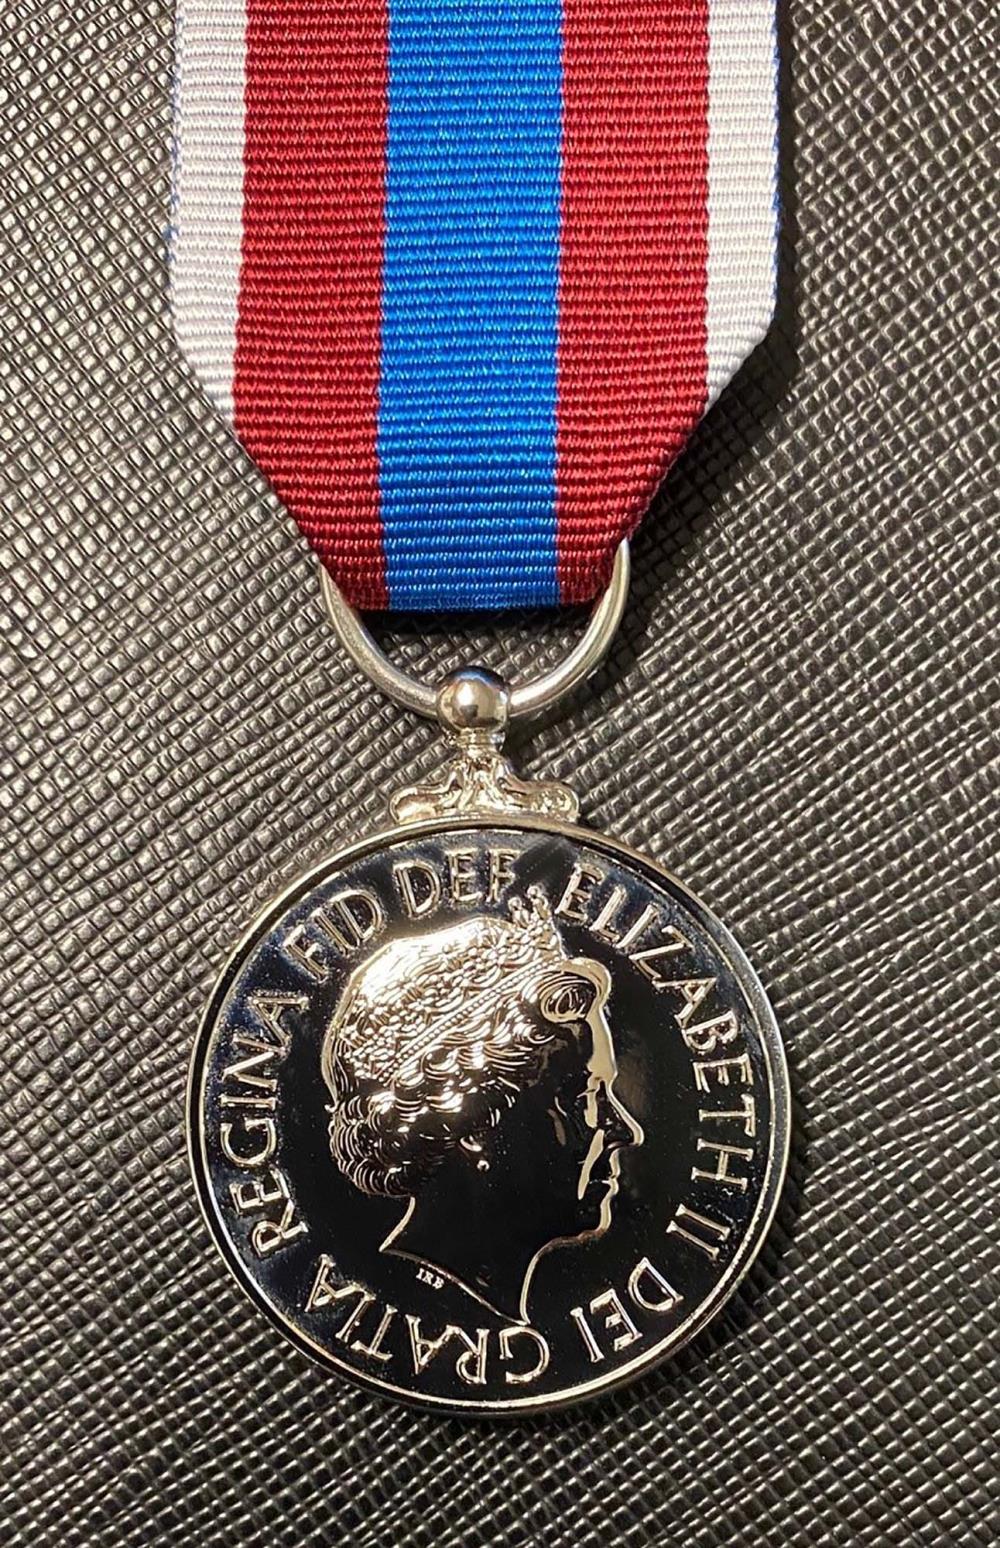 2022 Queen's Platinum Jubilee Medal